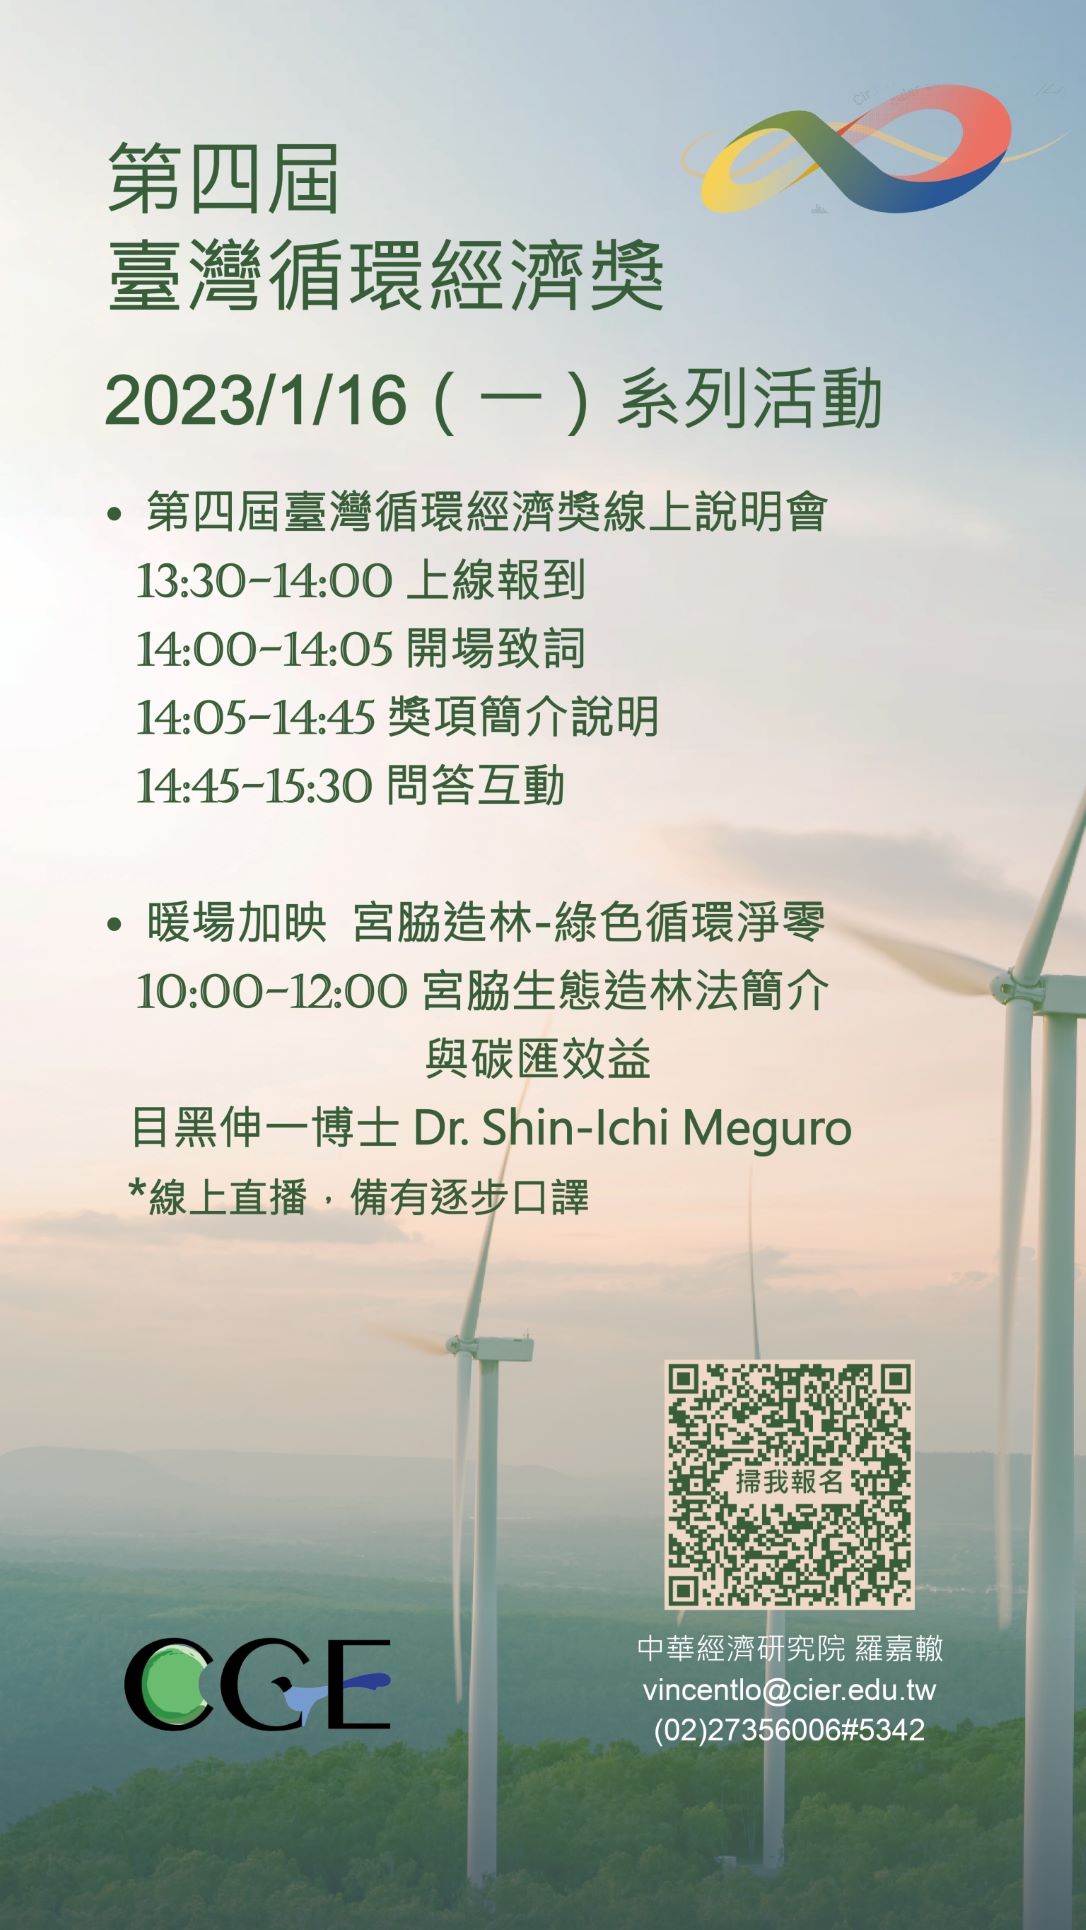 【活動分享】第四屆臺灣循環經濟獎線上說明會